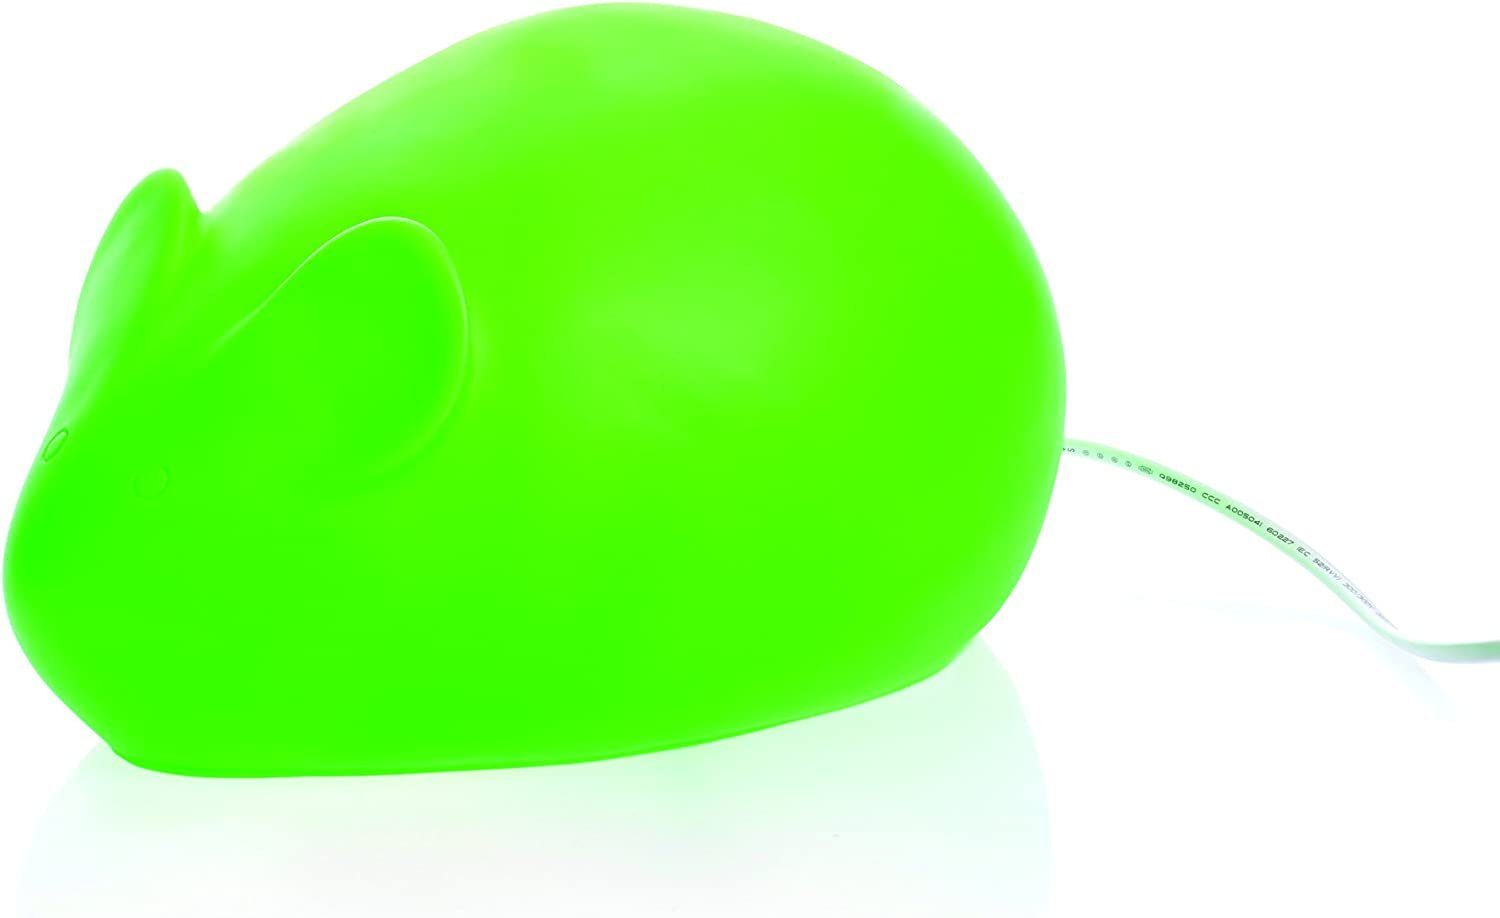 Egmont Toys Nachtlicht LED Heico 28 Kindezimmer Lampe cm "MAUS" Handgemacht • grün